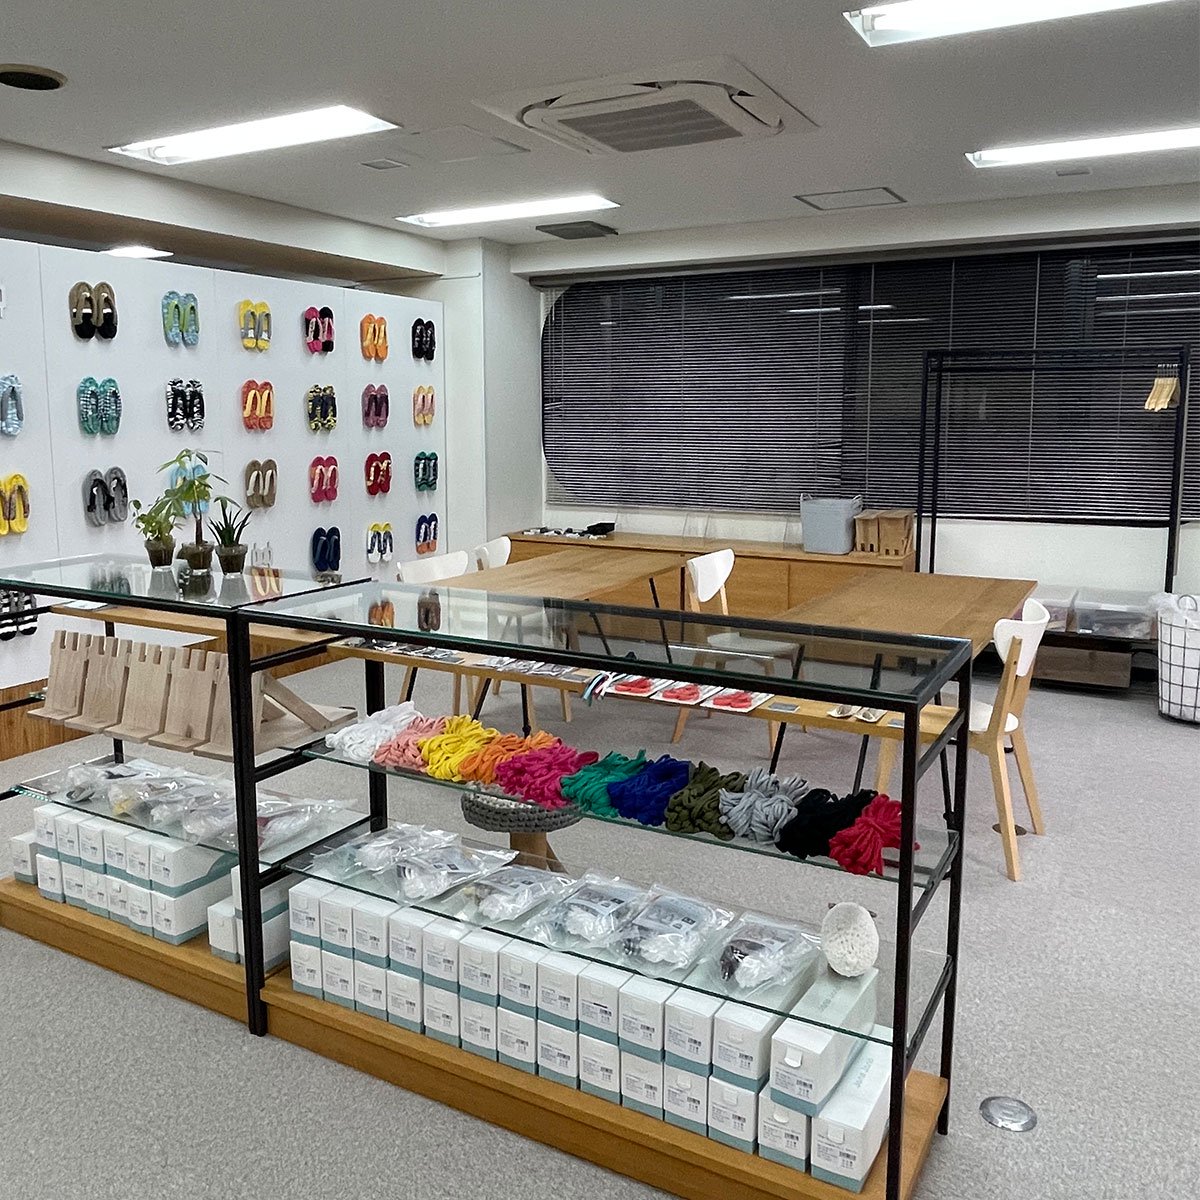 伝統工芸・布ぞうりの手作り体験教室 - ワークショップ「JonoJono Workspace」へのアクセス